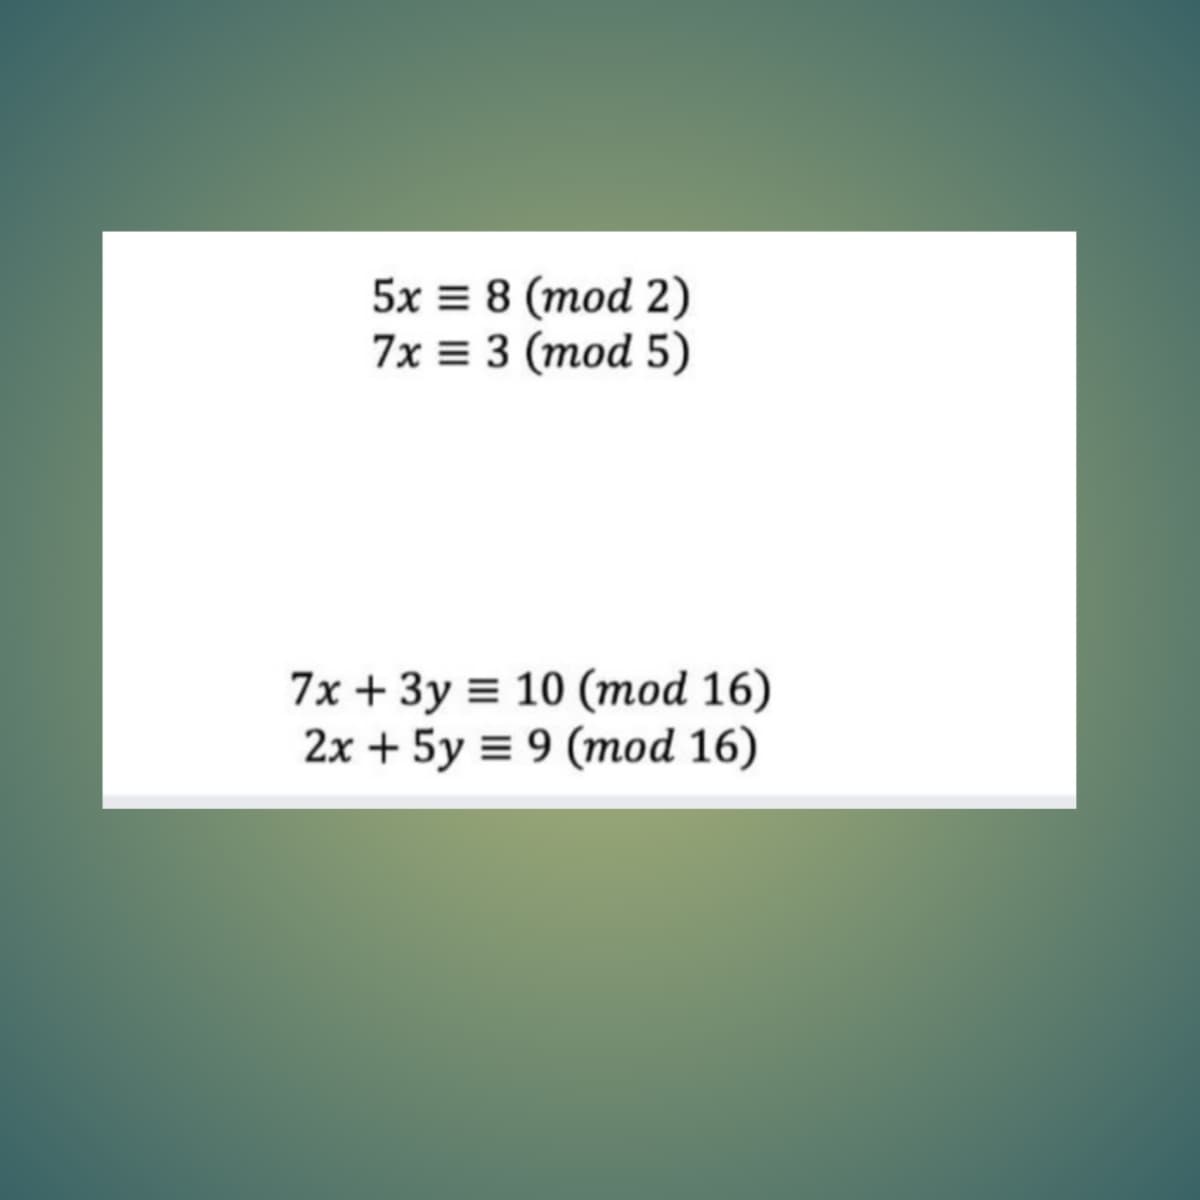 5x = 8 (mod 2)
7x = 3 (mod 5)
7x + 3y = 10 (mod 16)
2x + 5y = 9 (mod 16)
